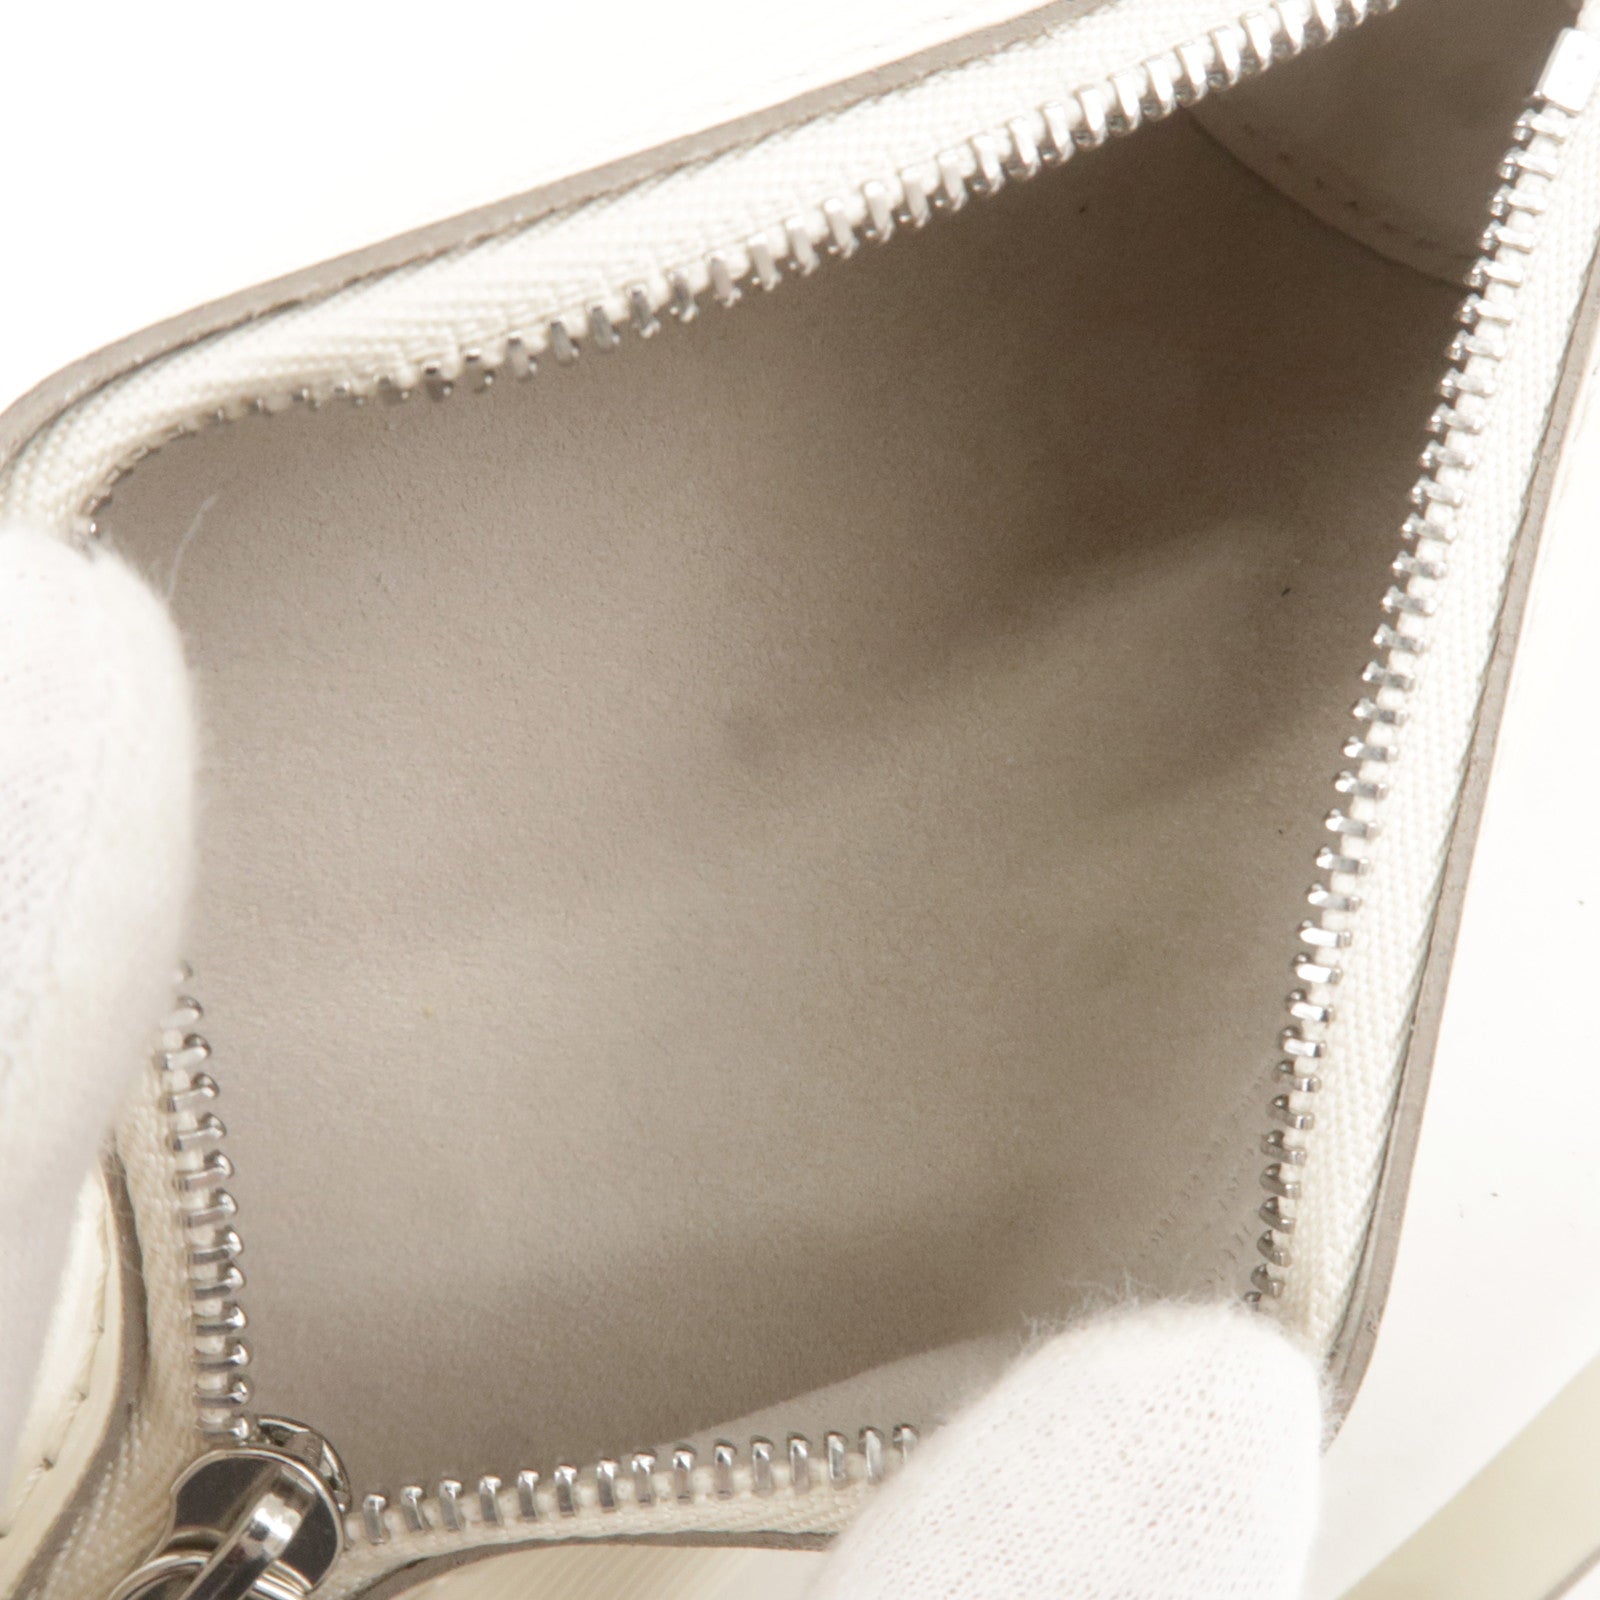 Louis Vuitton Soufflot Handbag 280180